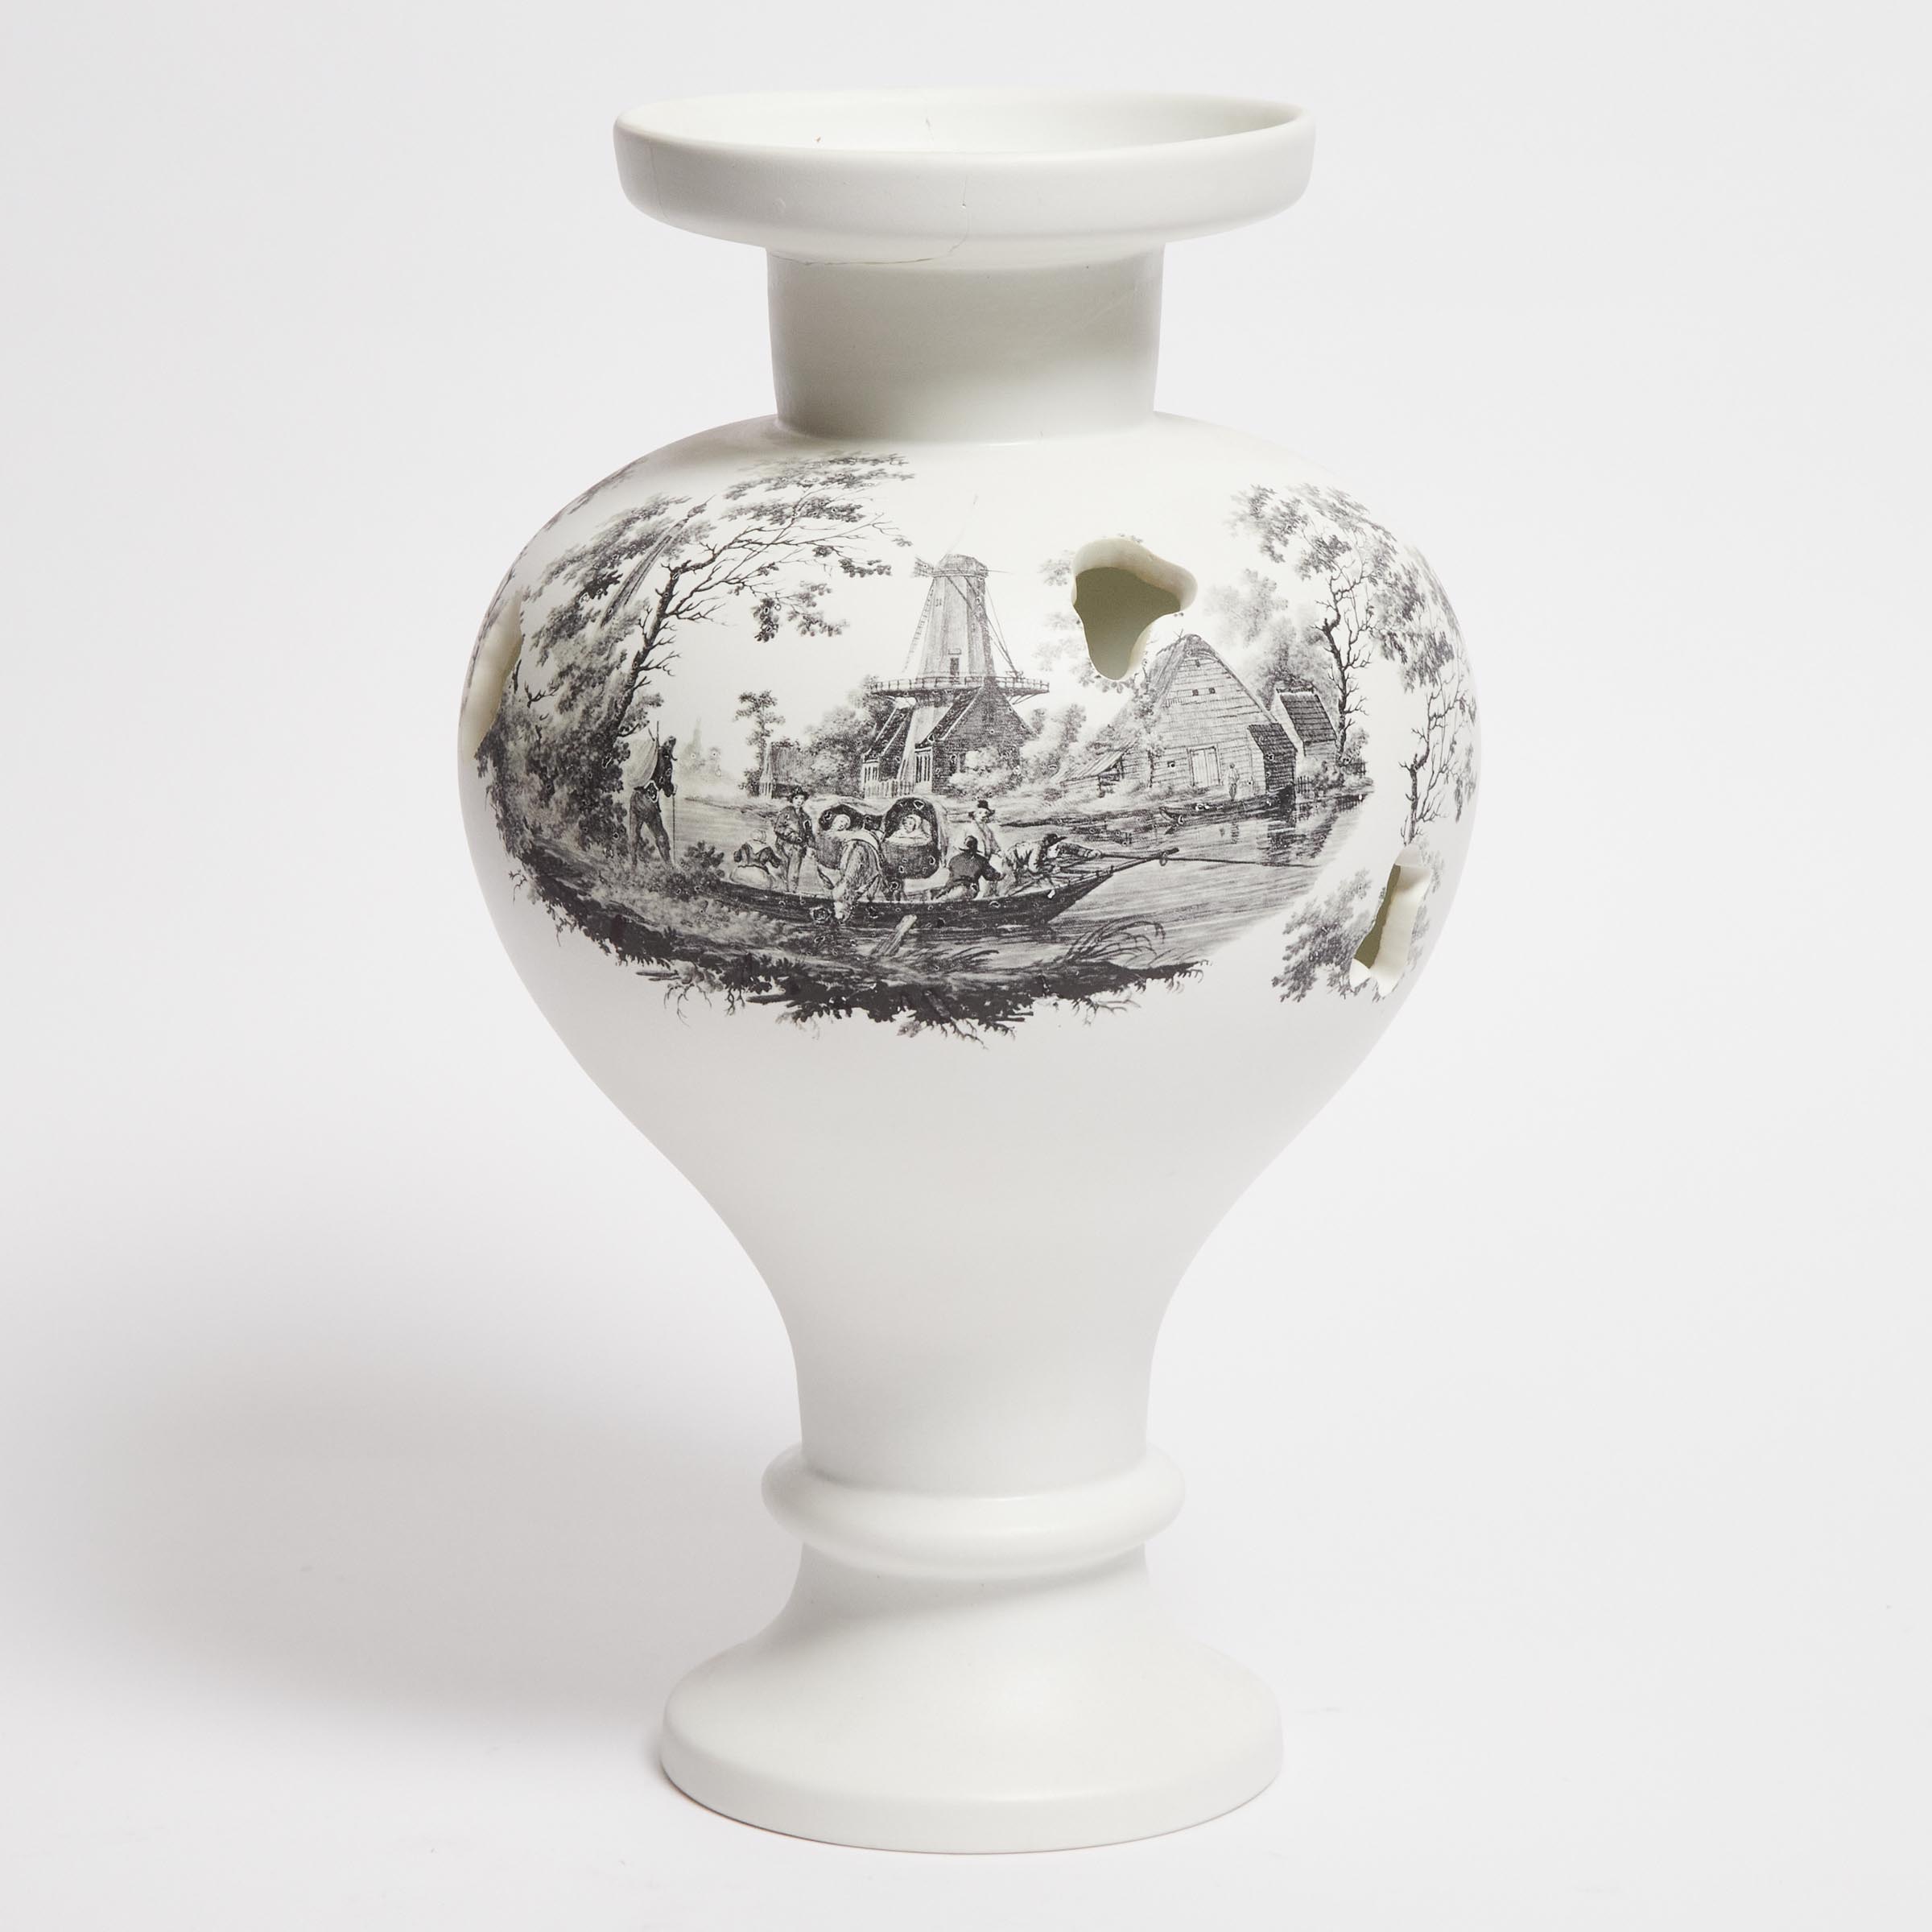 Miriam van der Lubbe (Dutch, b.1972), Pierced Vase with Landscape Scene, 2007, height 15 in — 38 cm